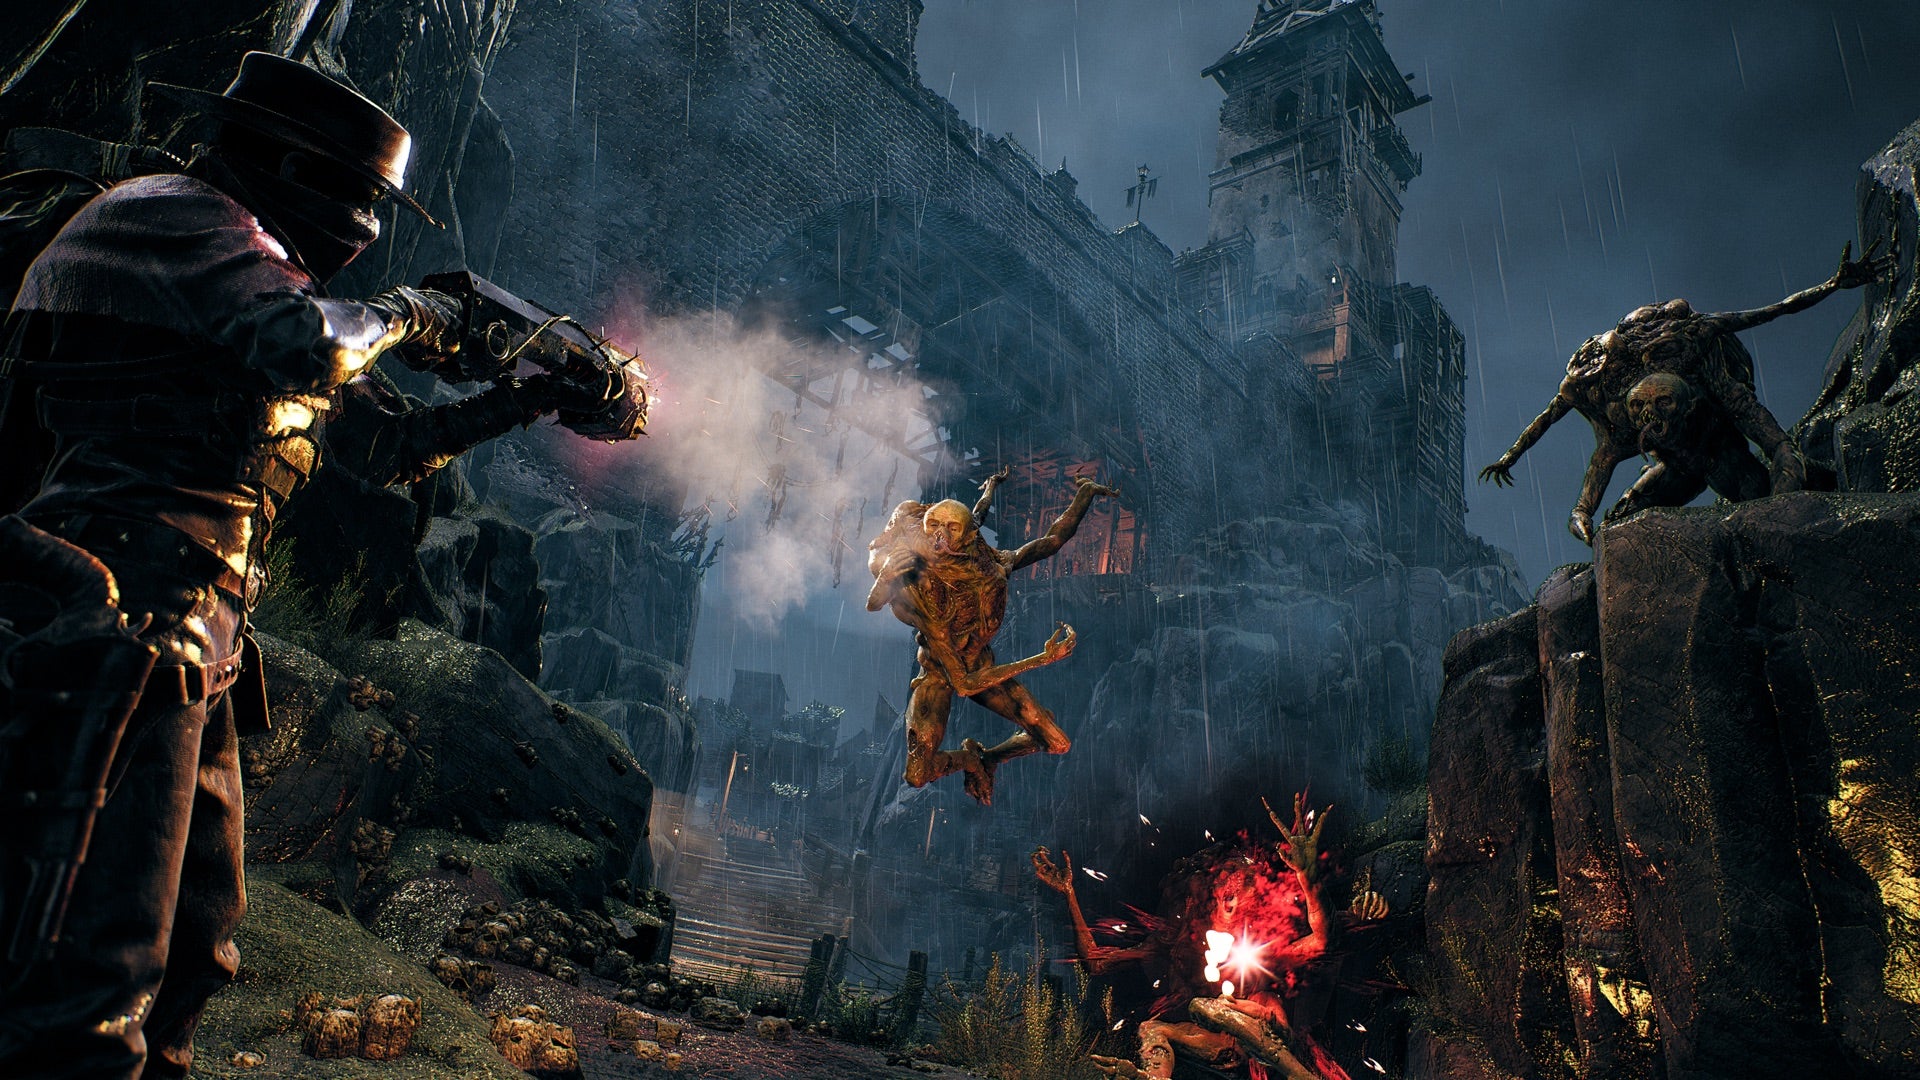 Скриншот из дополнения The Awakened King для игры Remnant 2, где игрок атакует на вид кажущихся водных врагов, а над головой величественно возвышается замок.